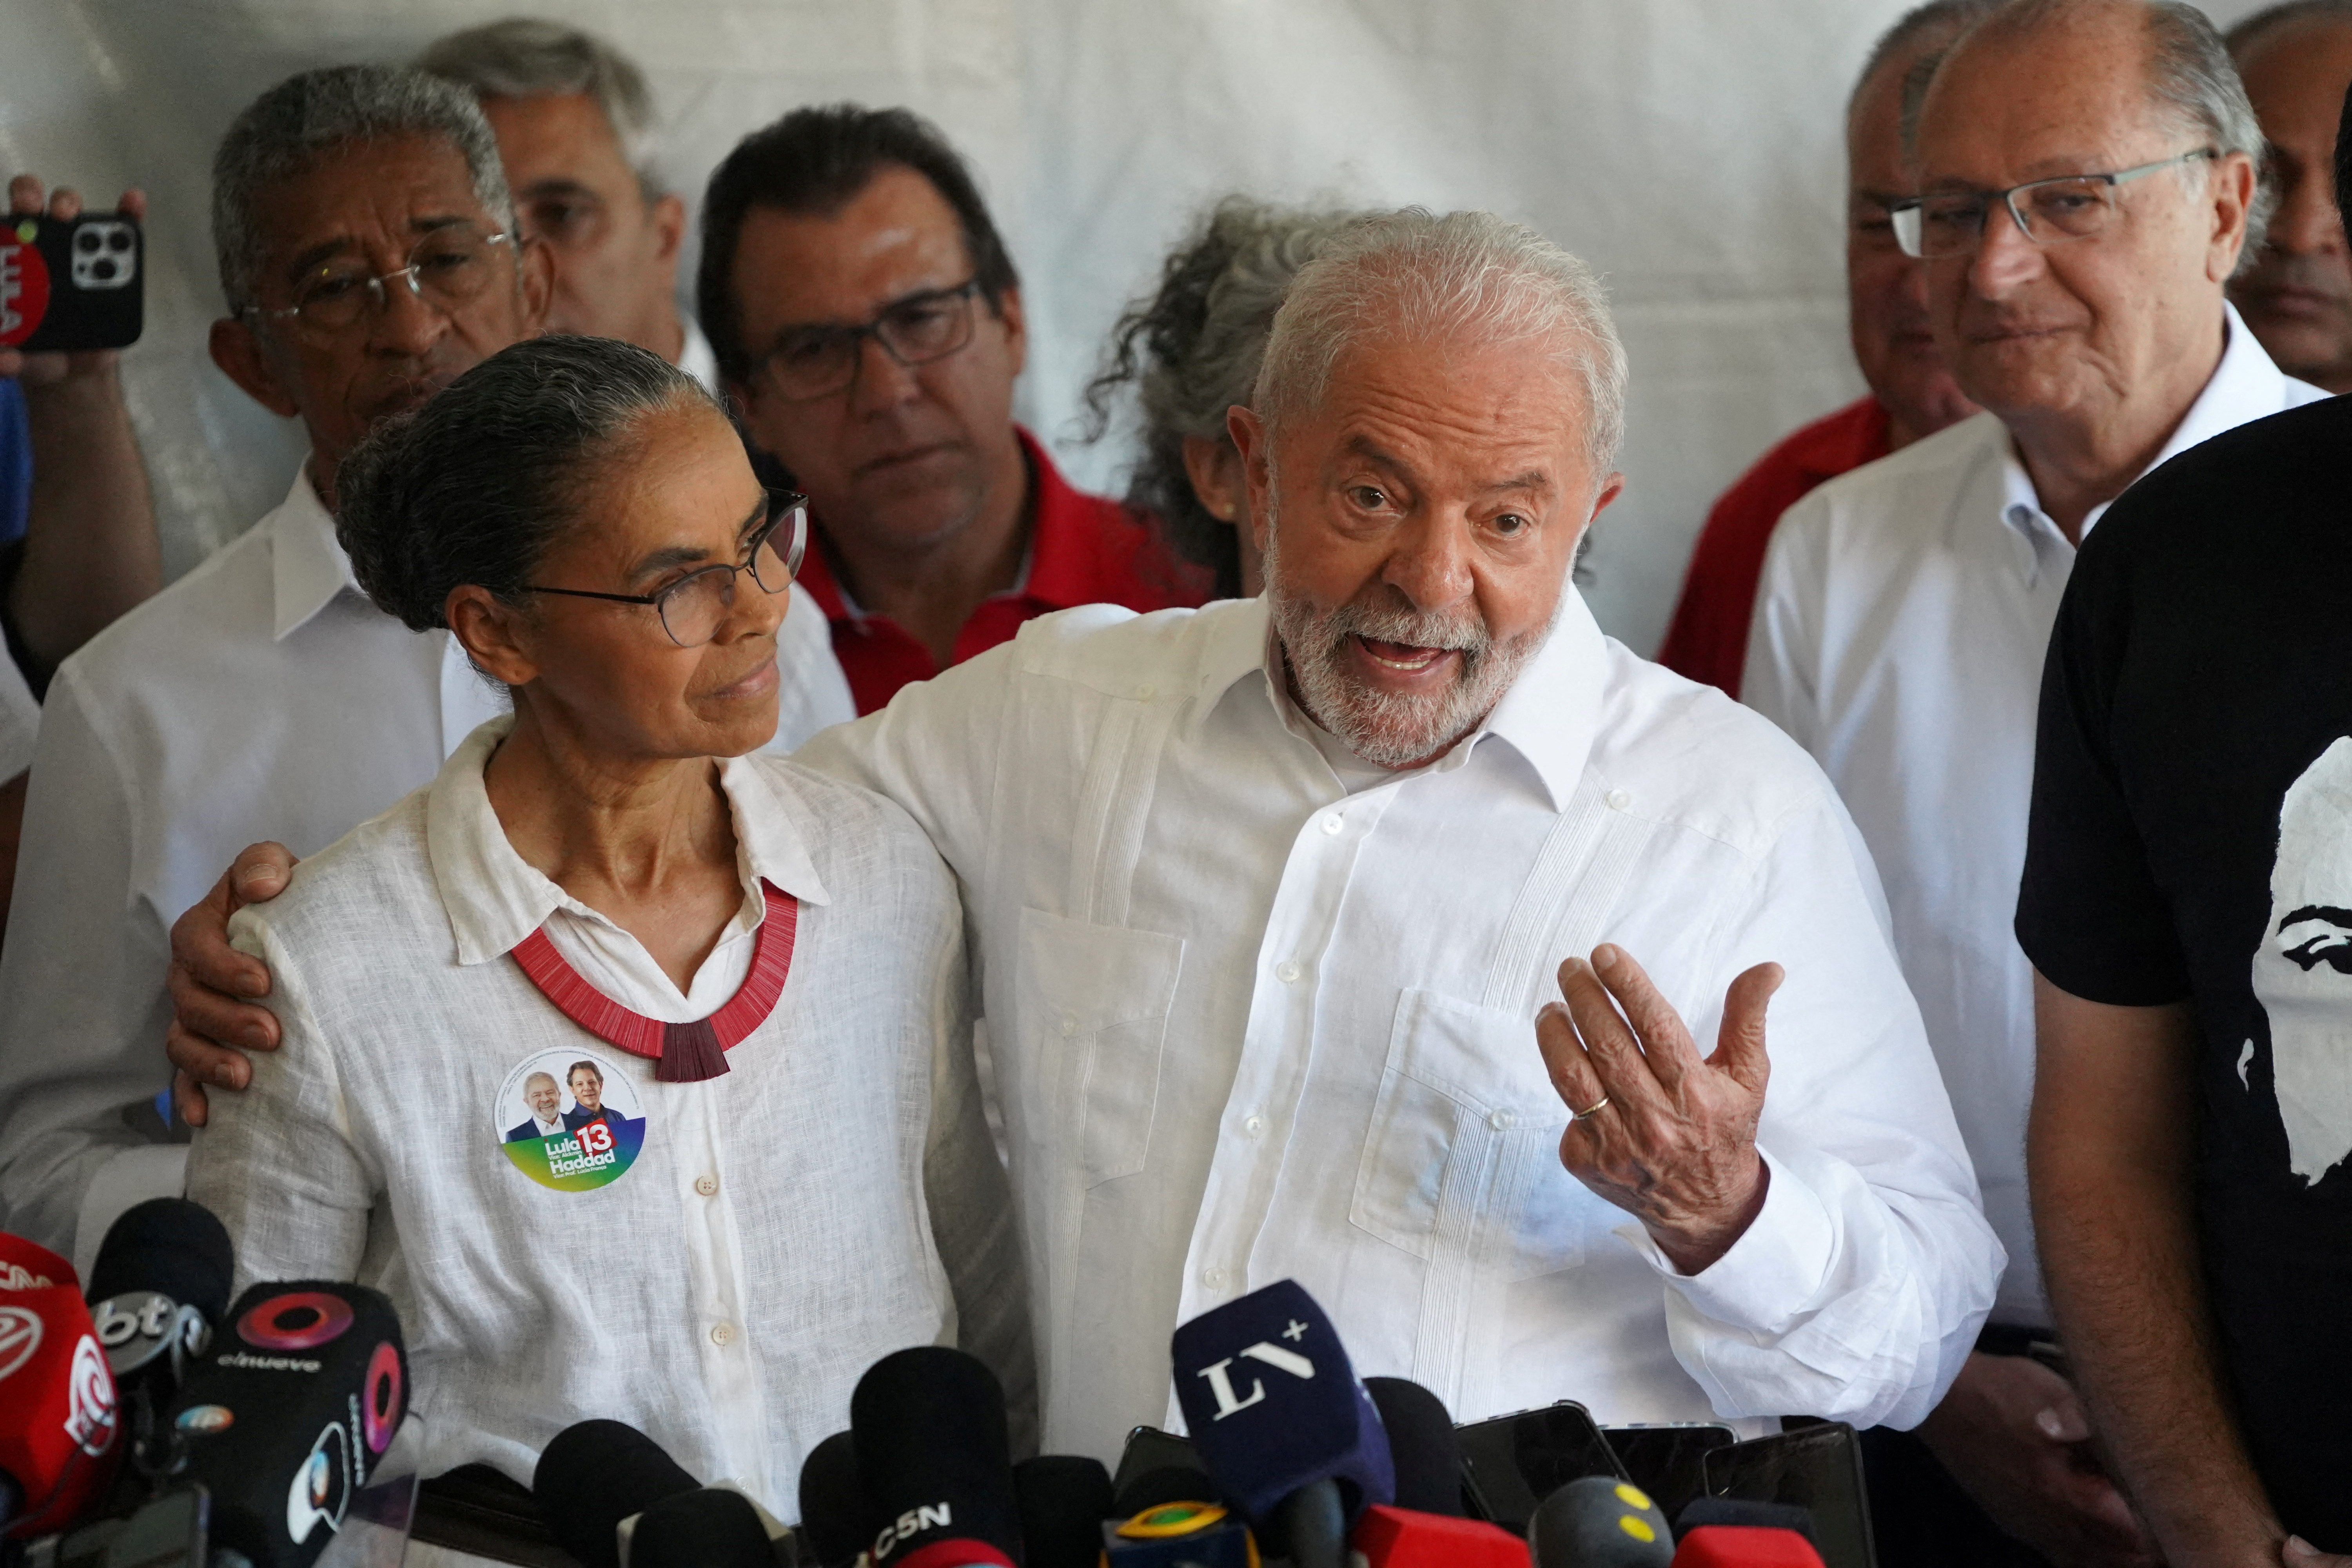 La decisión judicial sobre la ley del “Marco Temporal” fue aplazada y el futuro de la política medioambiental de Lula es incierto